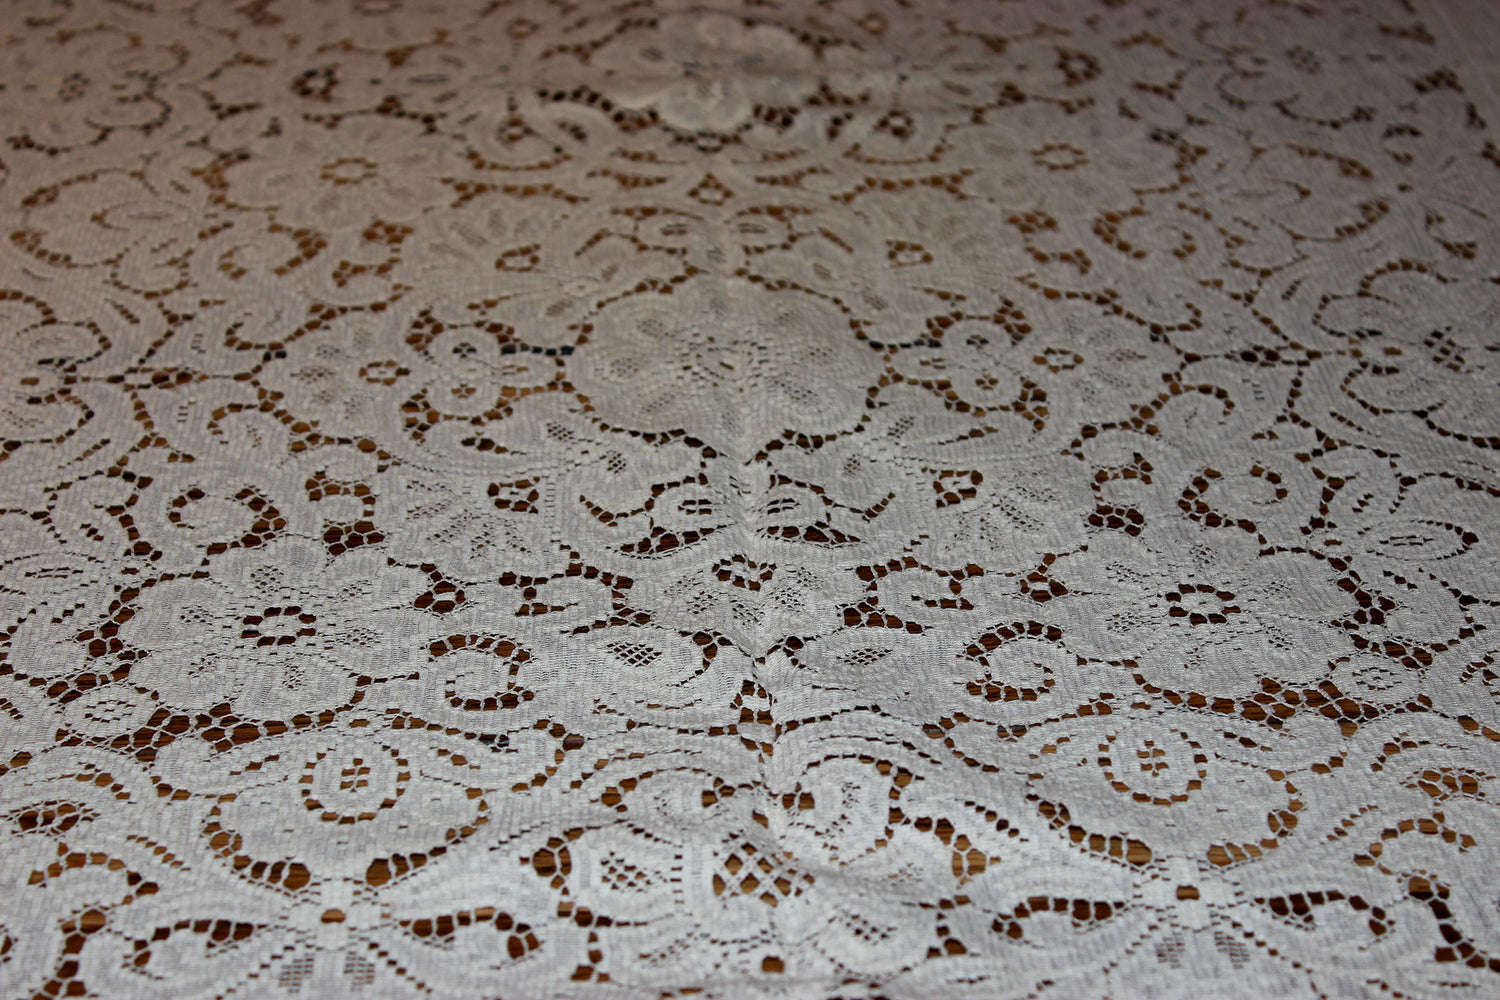 Lace Tablecloth, Vintage